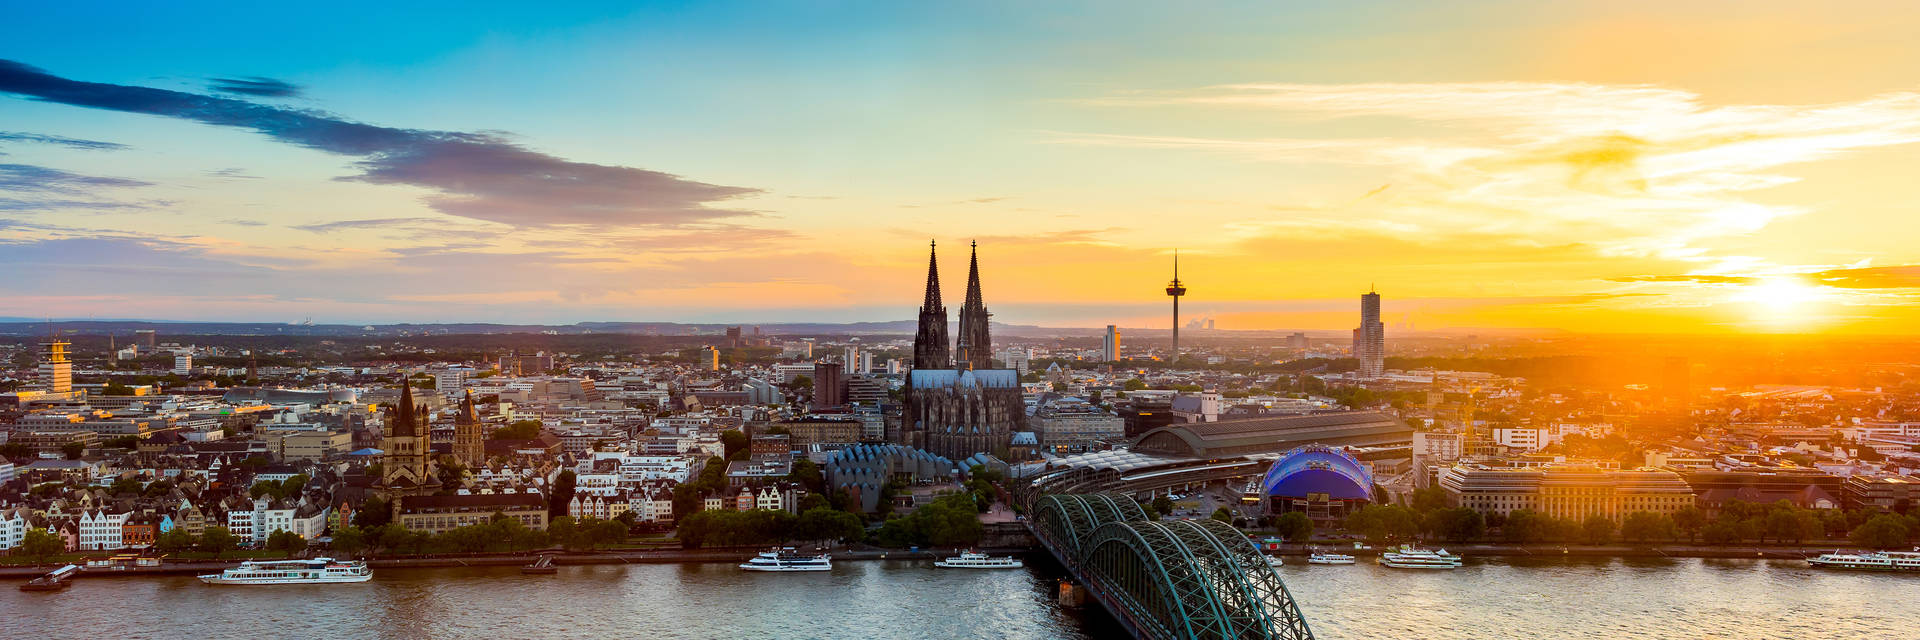 Dein Stellenangebot in Köln bei H-Hotels.com